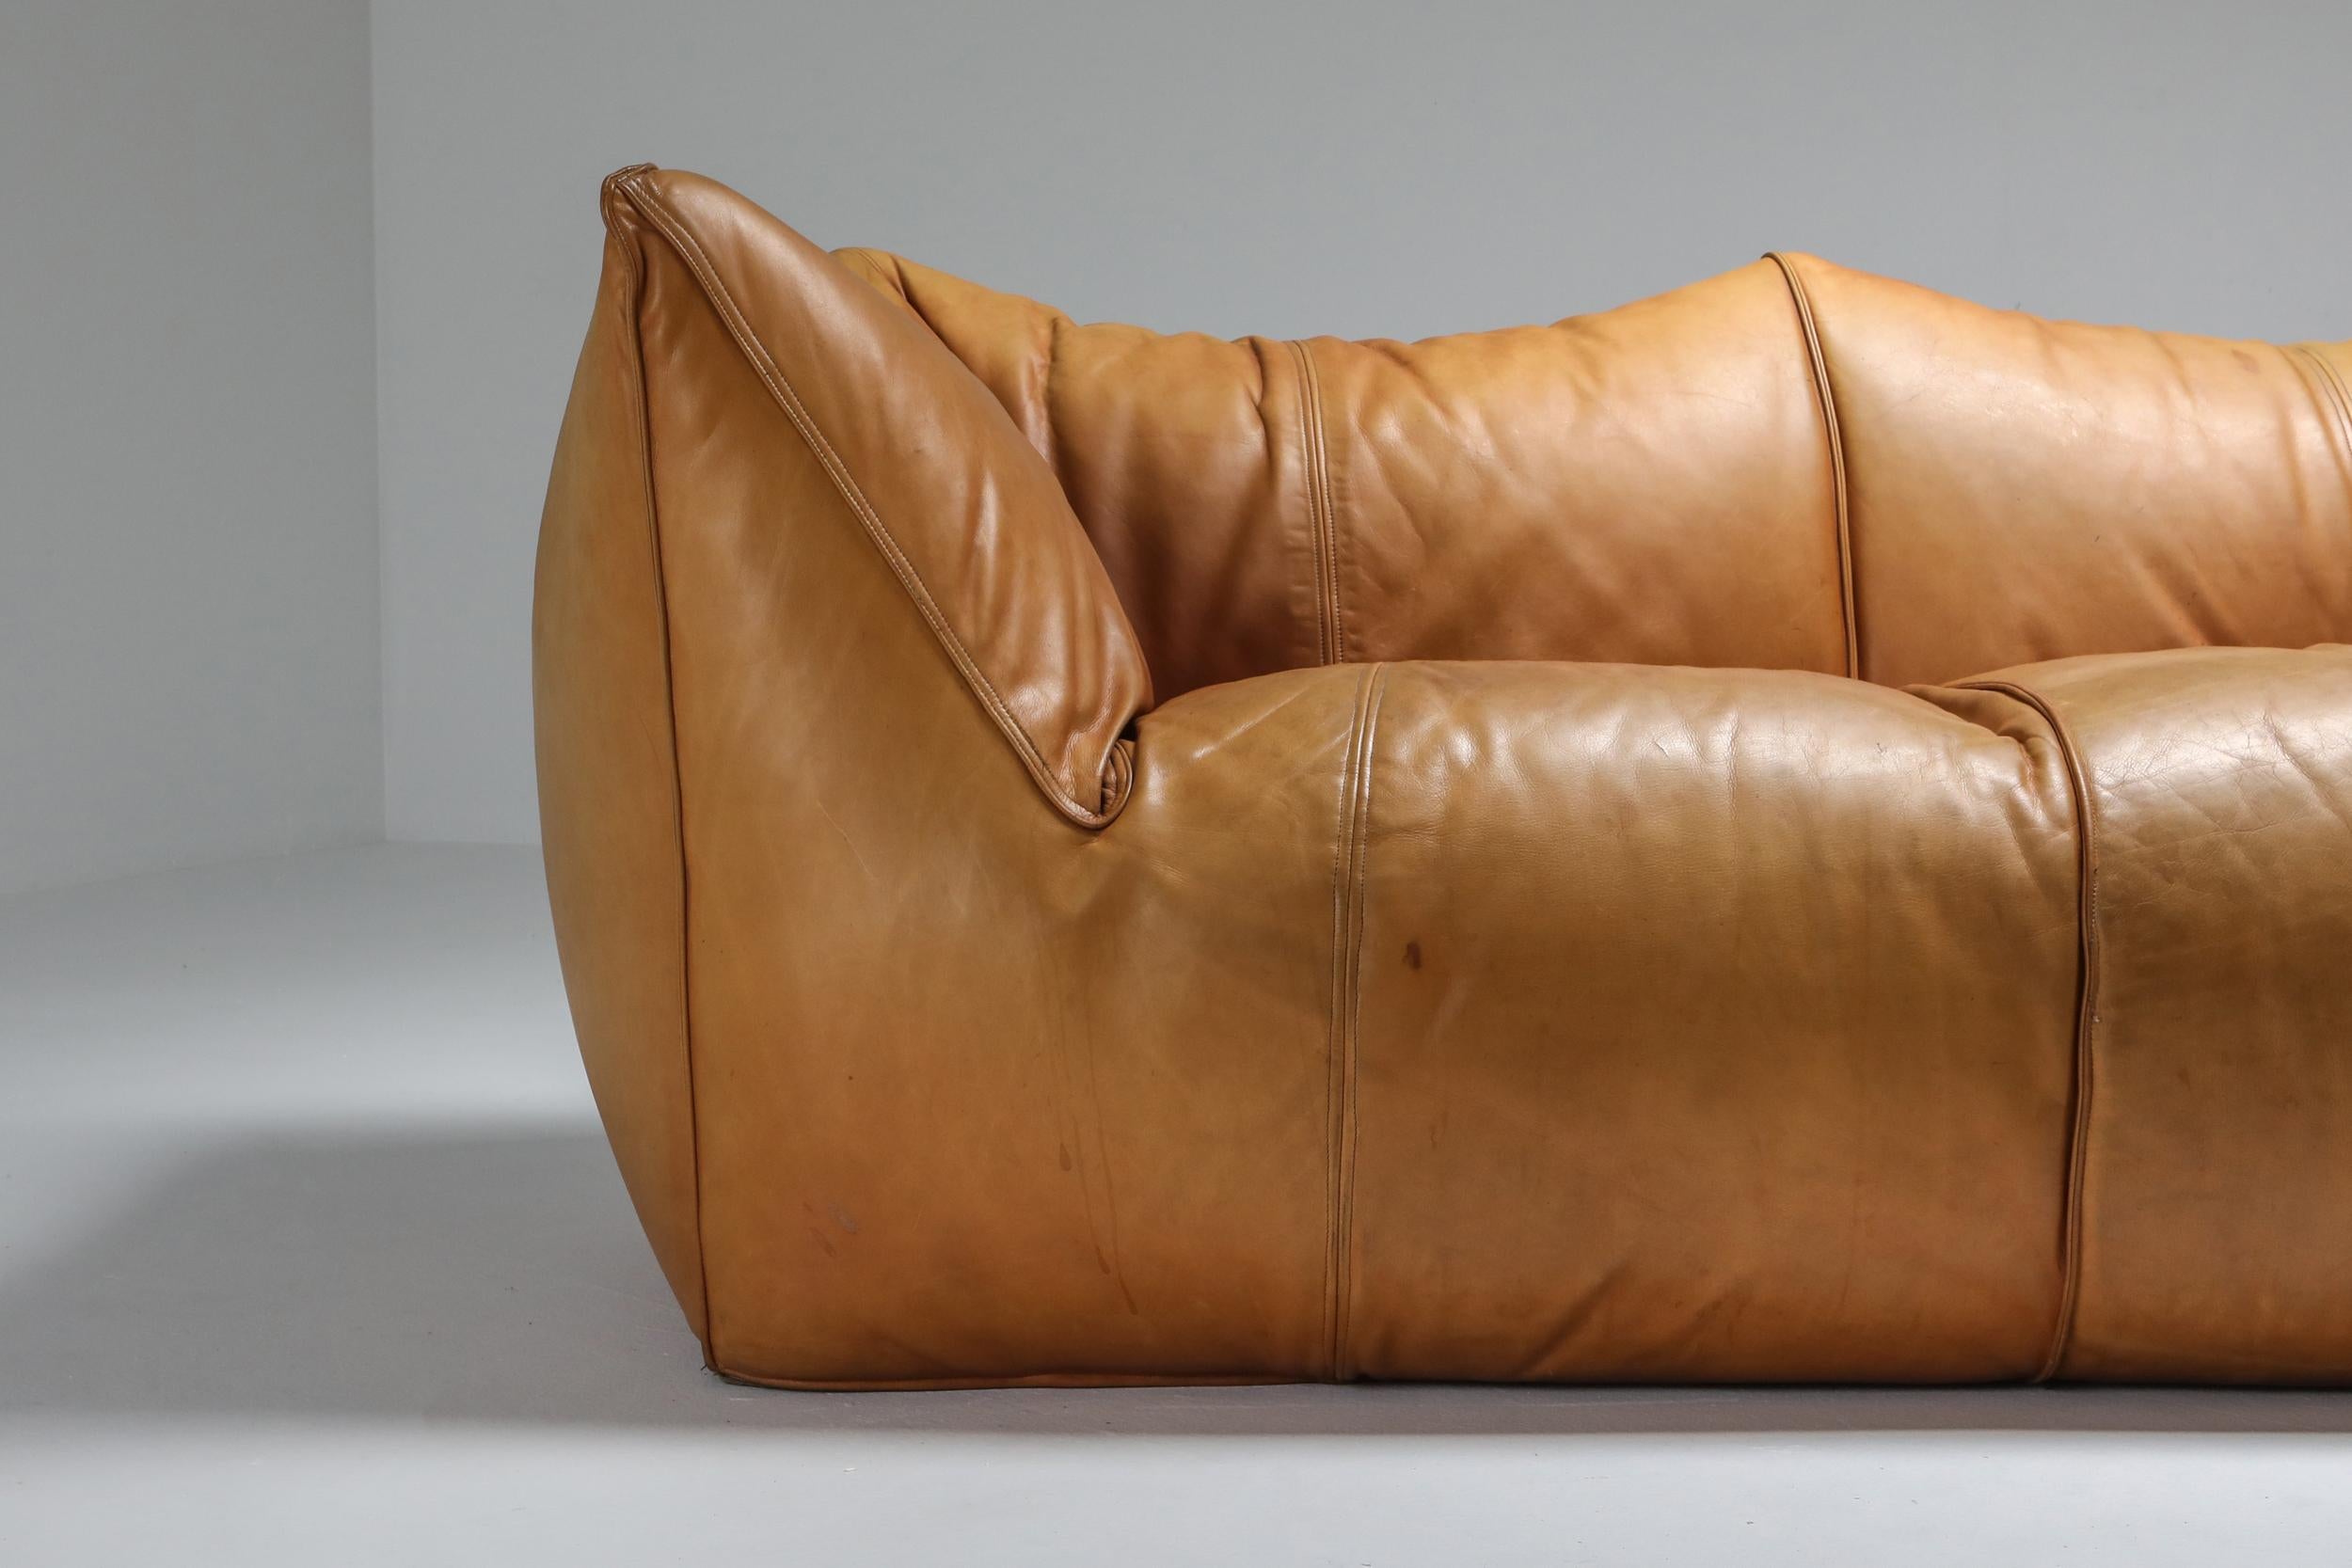 Mario Bellini 'Le Bambole' Three-Seat Couch in Tan Leather 1